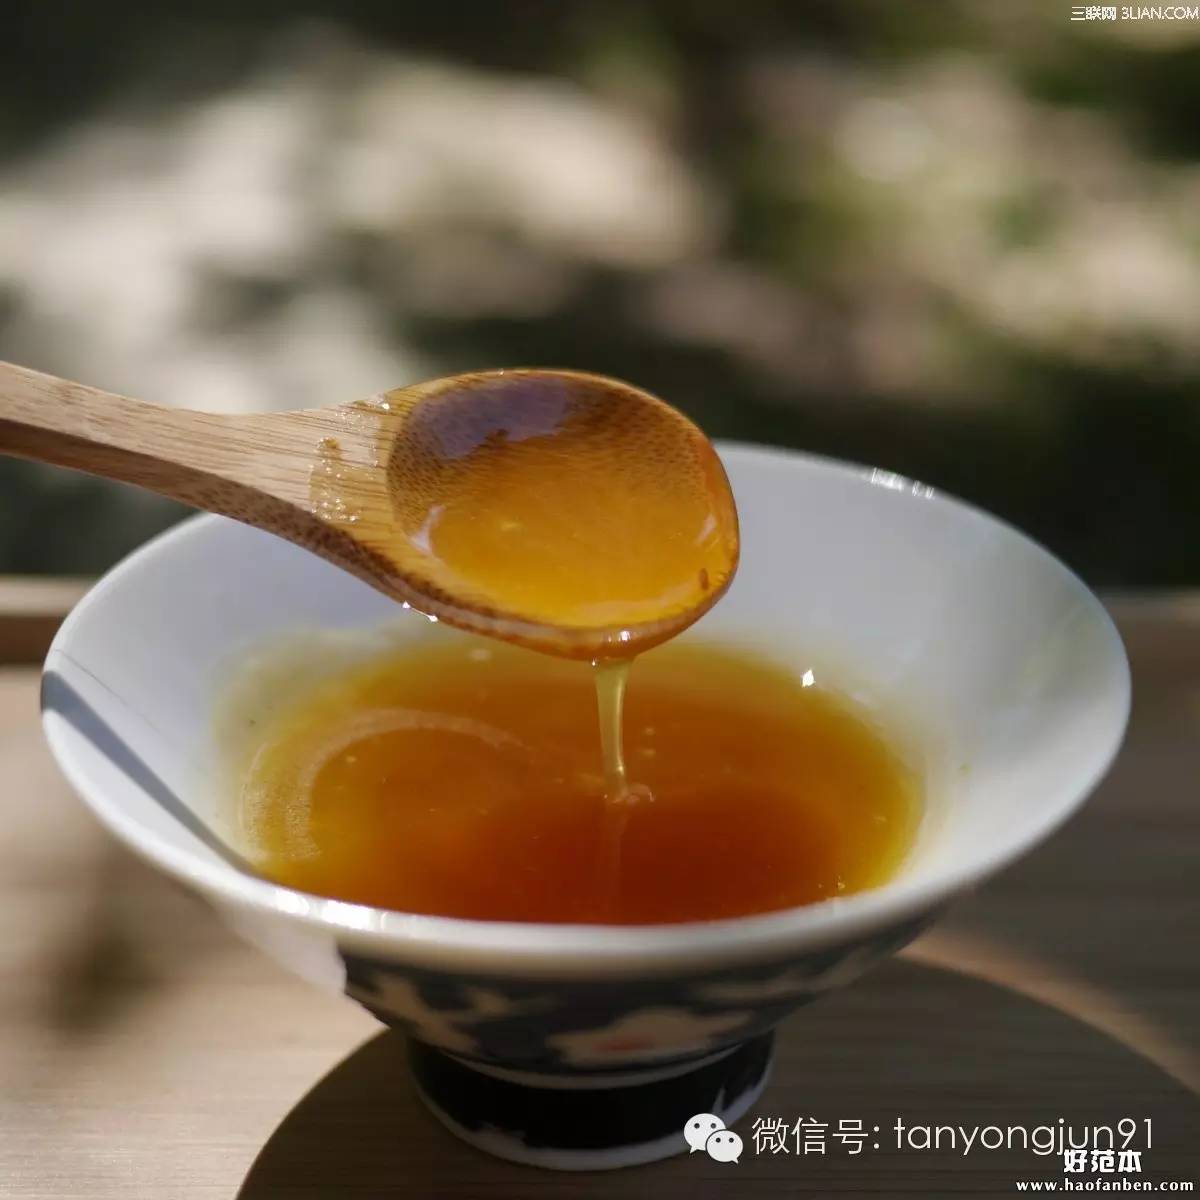 掺假 山毛榉蜂蜜功效 苦瓜蜂蜜面膜 蜂蜜凉拌苦瓜的做法 假蜂蜜市场比例